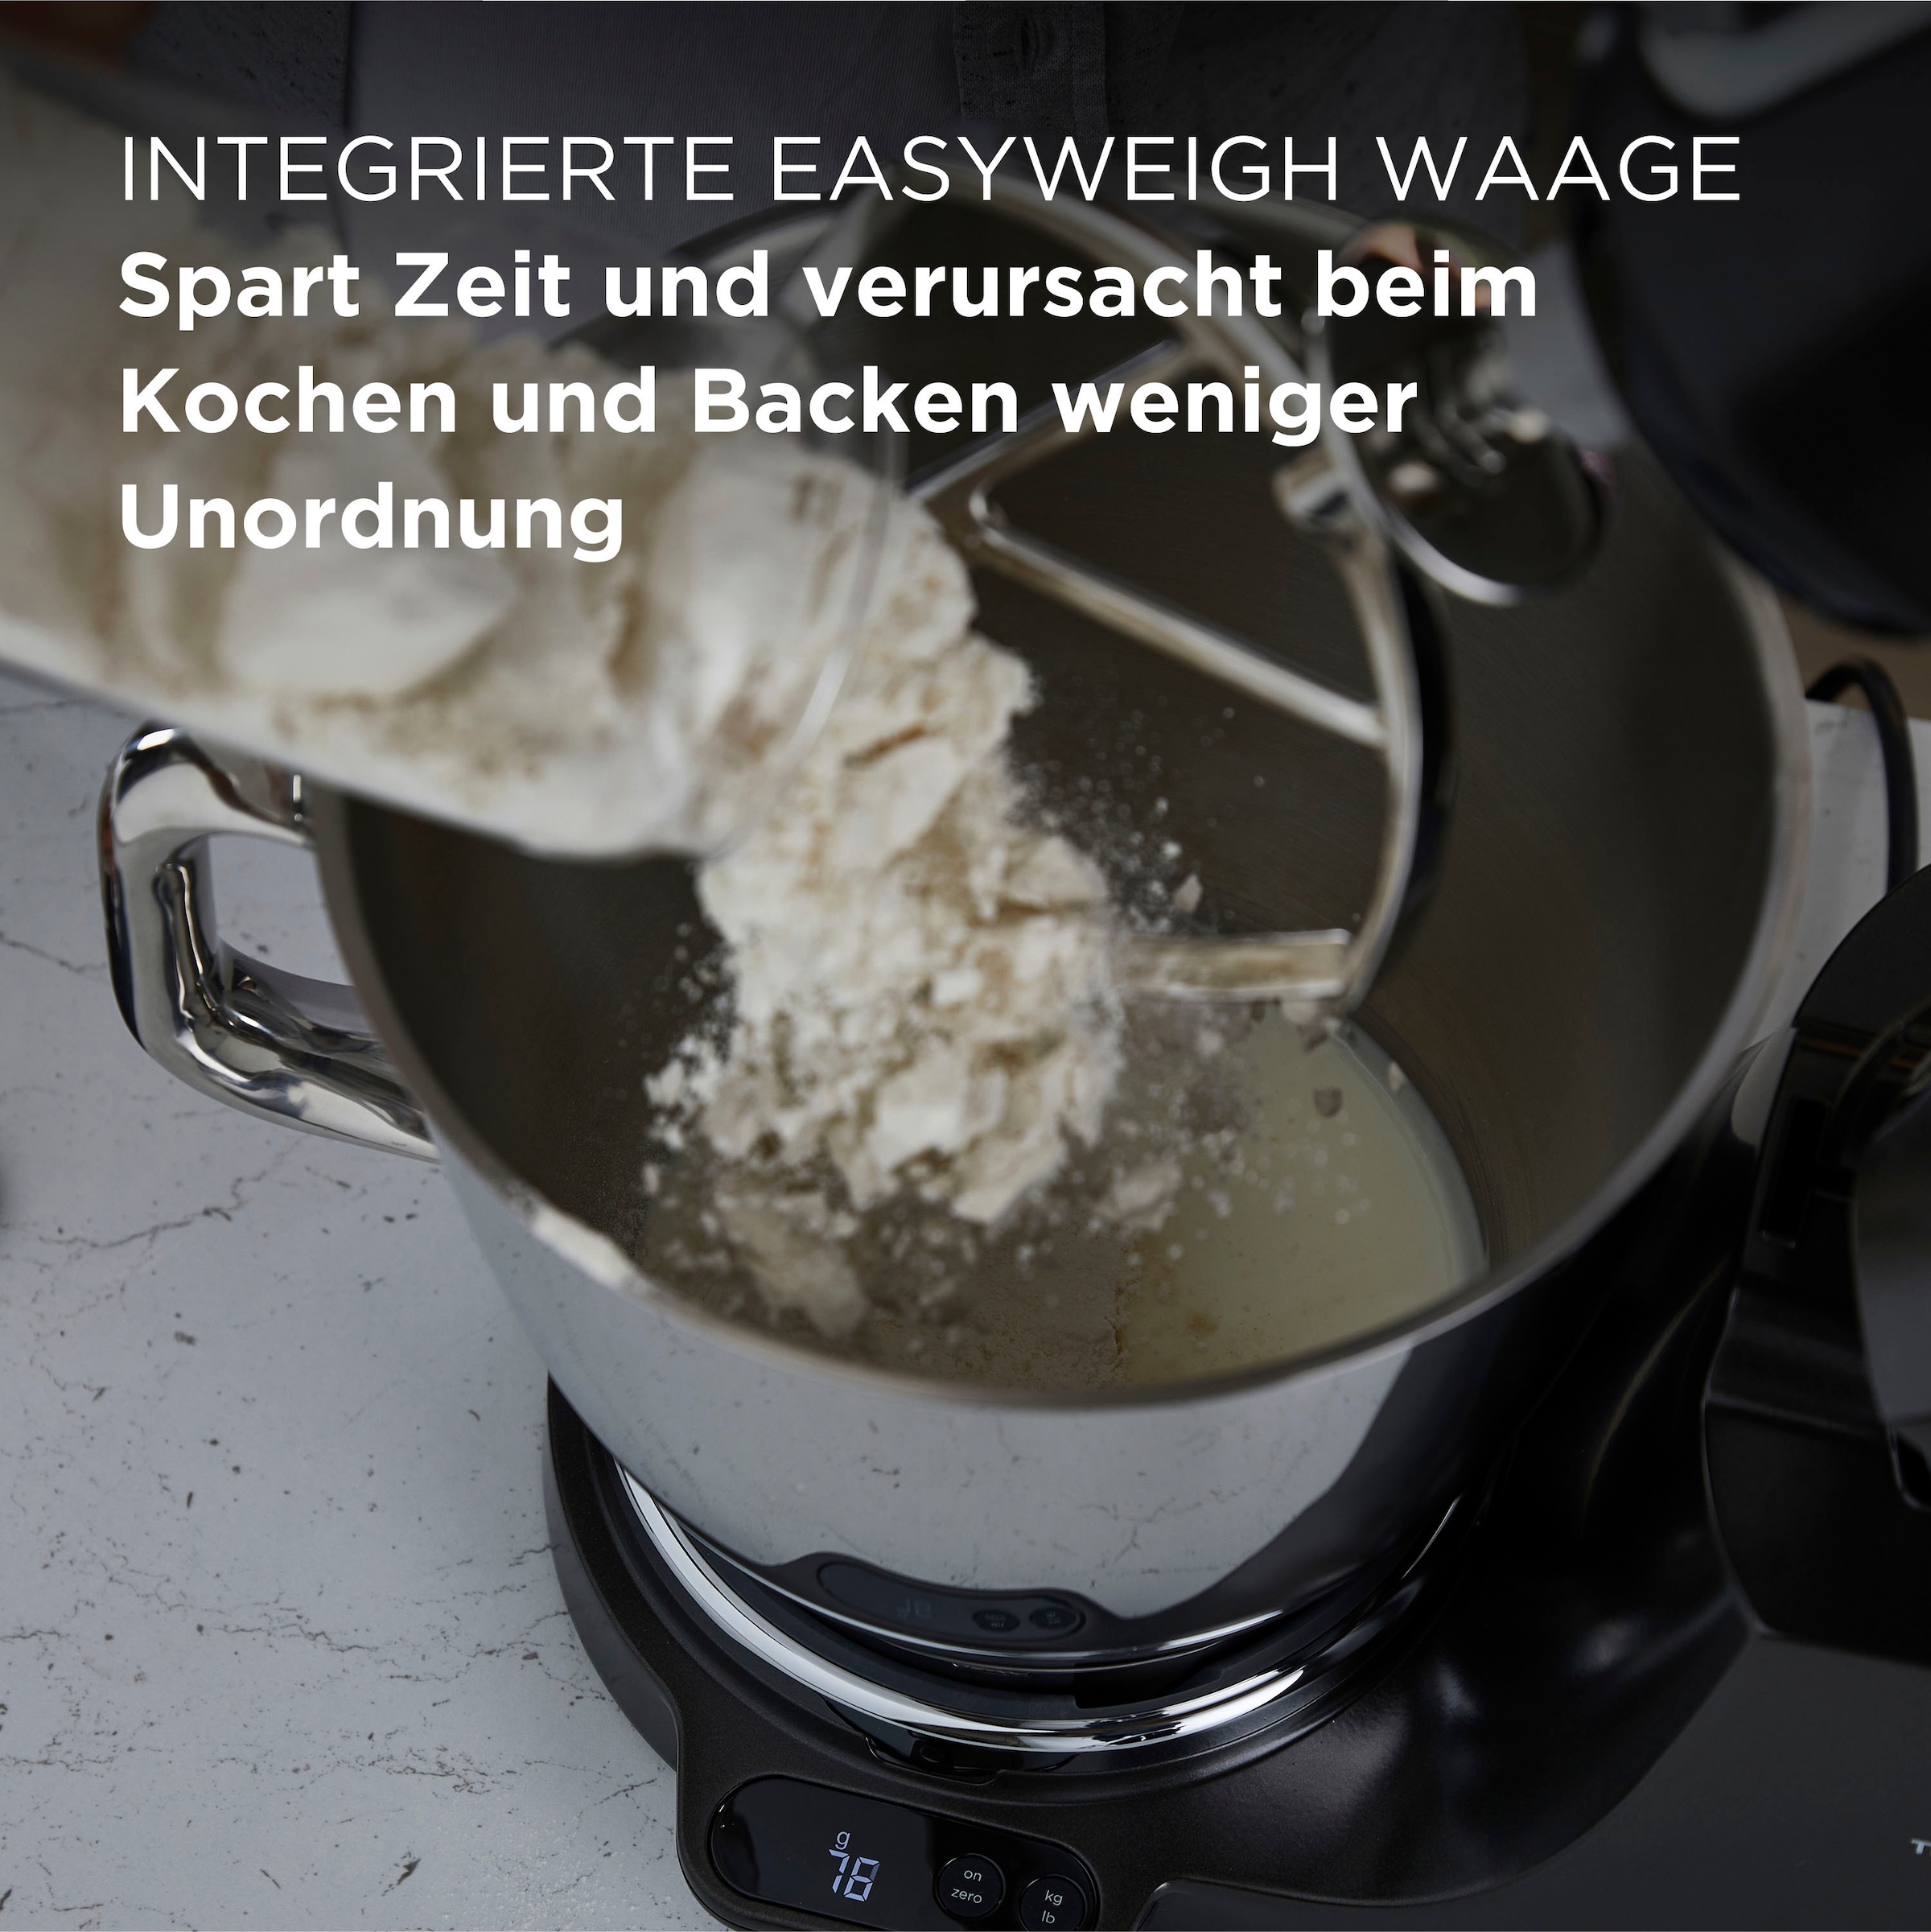 KENWOOD Küchenmaschine »Titanium Chef Baker XL KVL85.004BK, mit Waage +  umfangreichem Zubehör«, Gratis: Mixaufsatz KAH359GL + Schnitzelwerk AT340,  Wert: UVP 319,- | BAUR